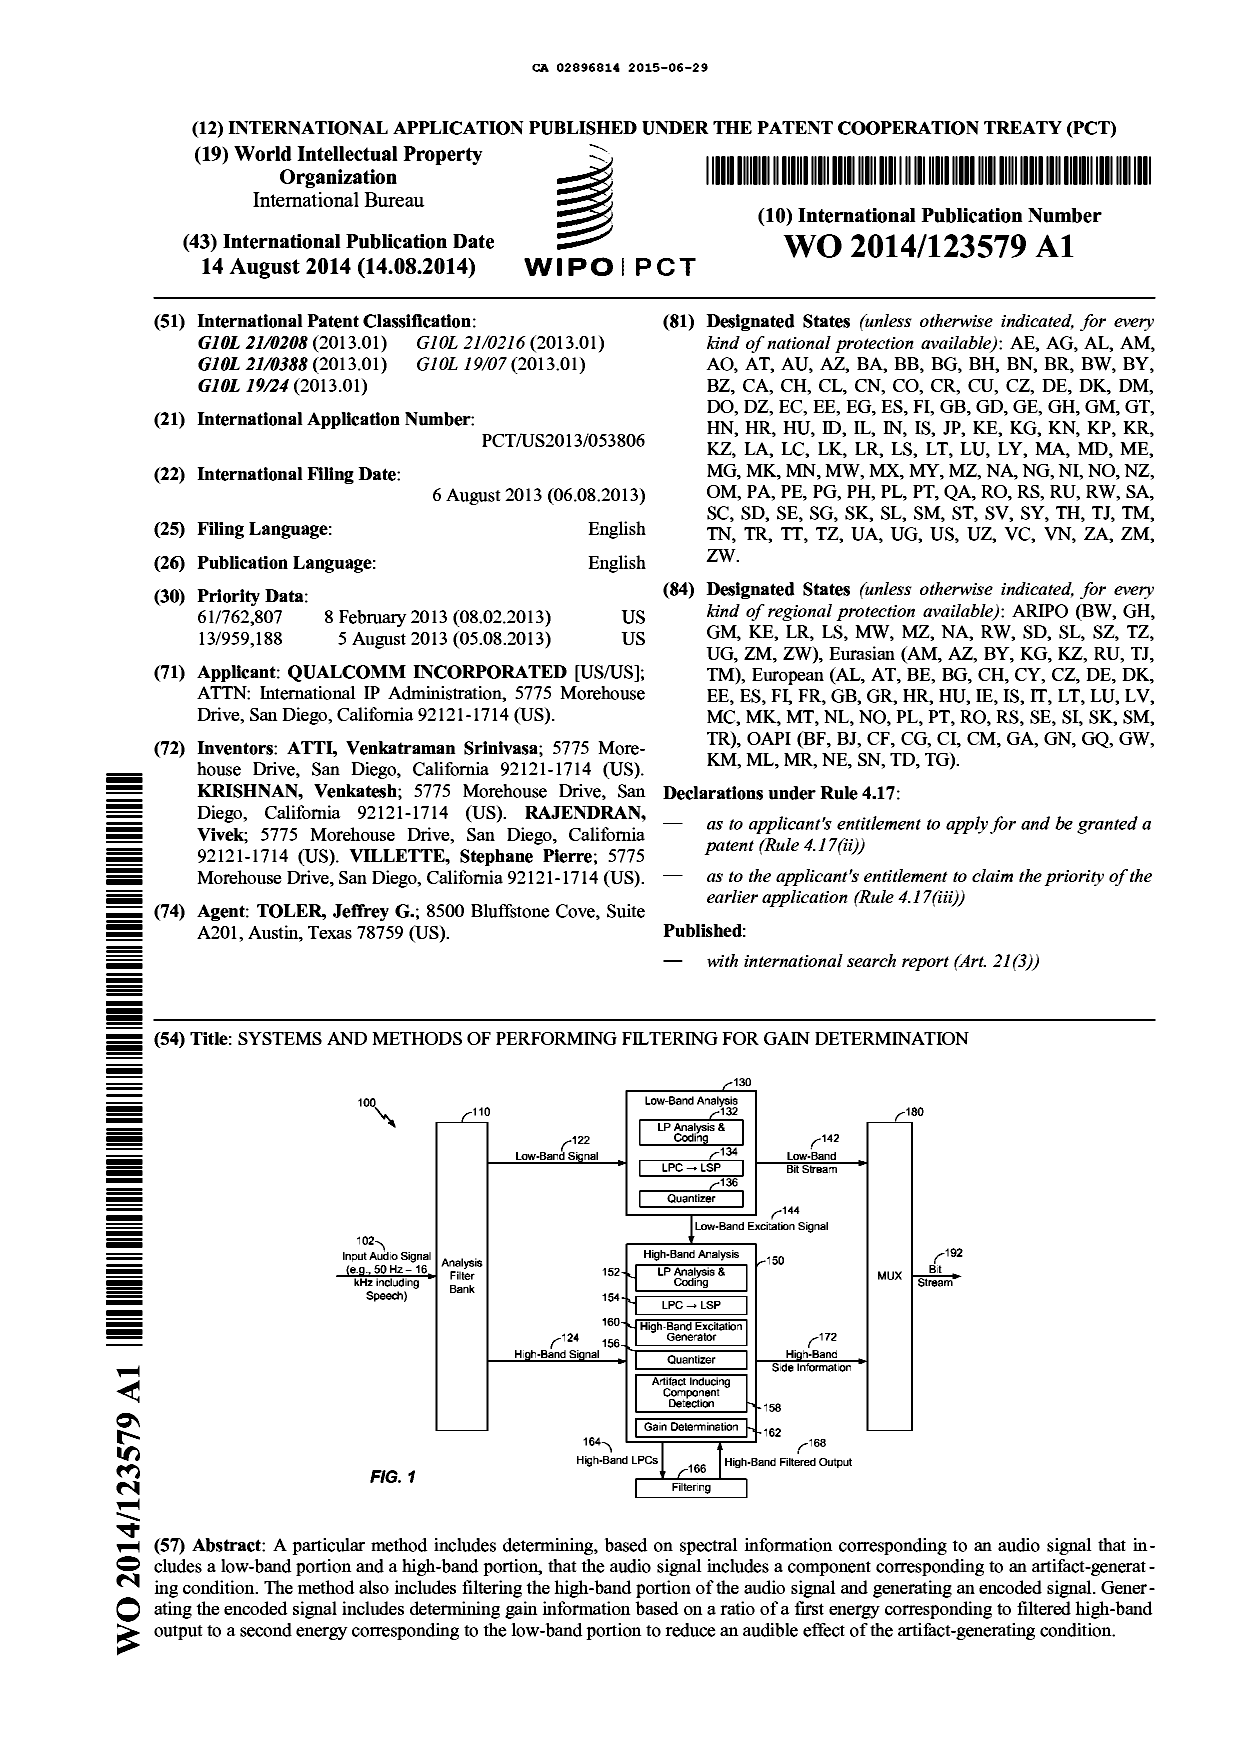 Document de brevet canadien 2896814. Abrégé 20141229. Image 1 de 1